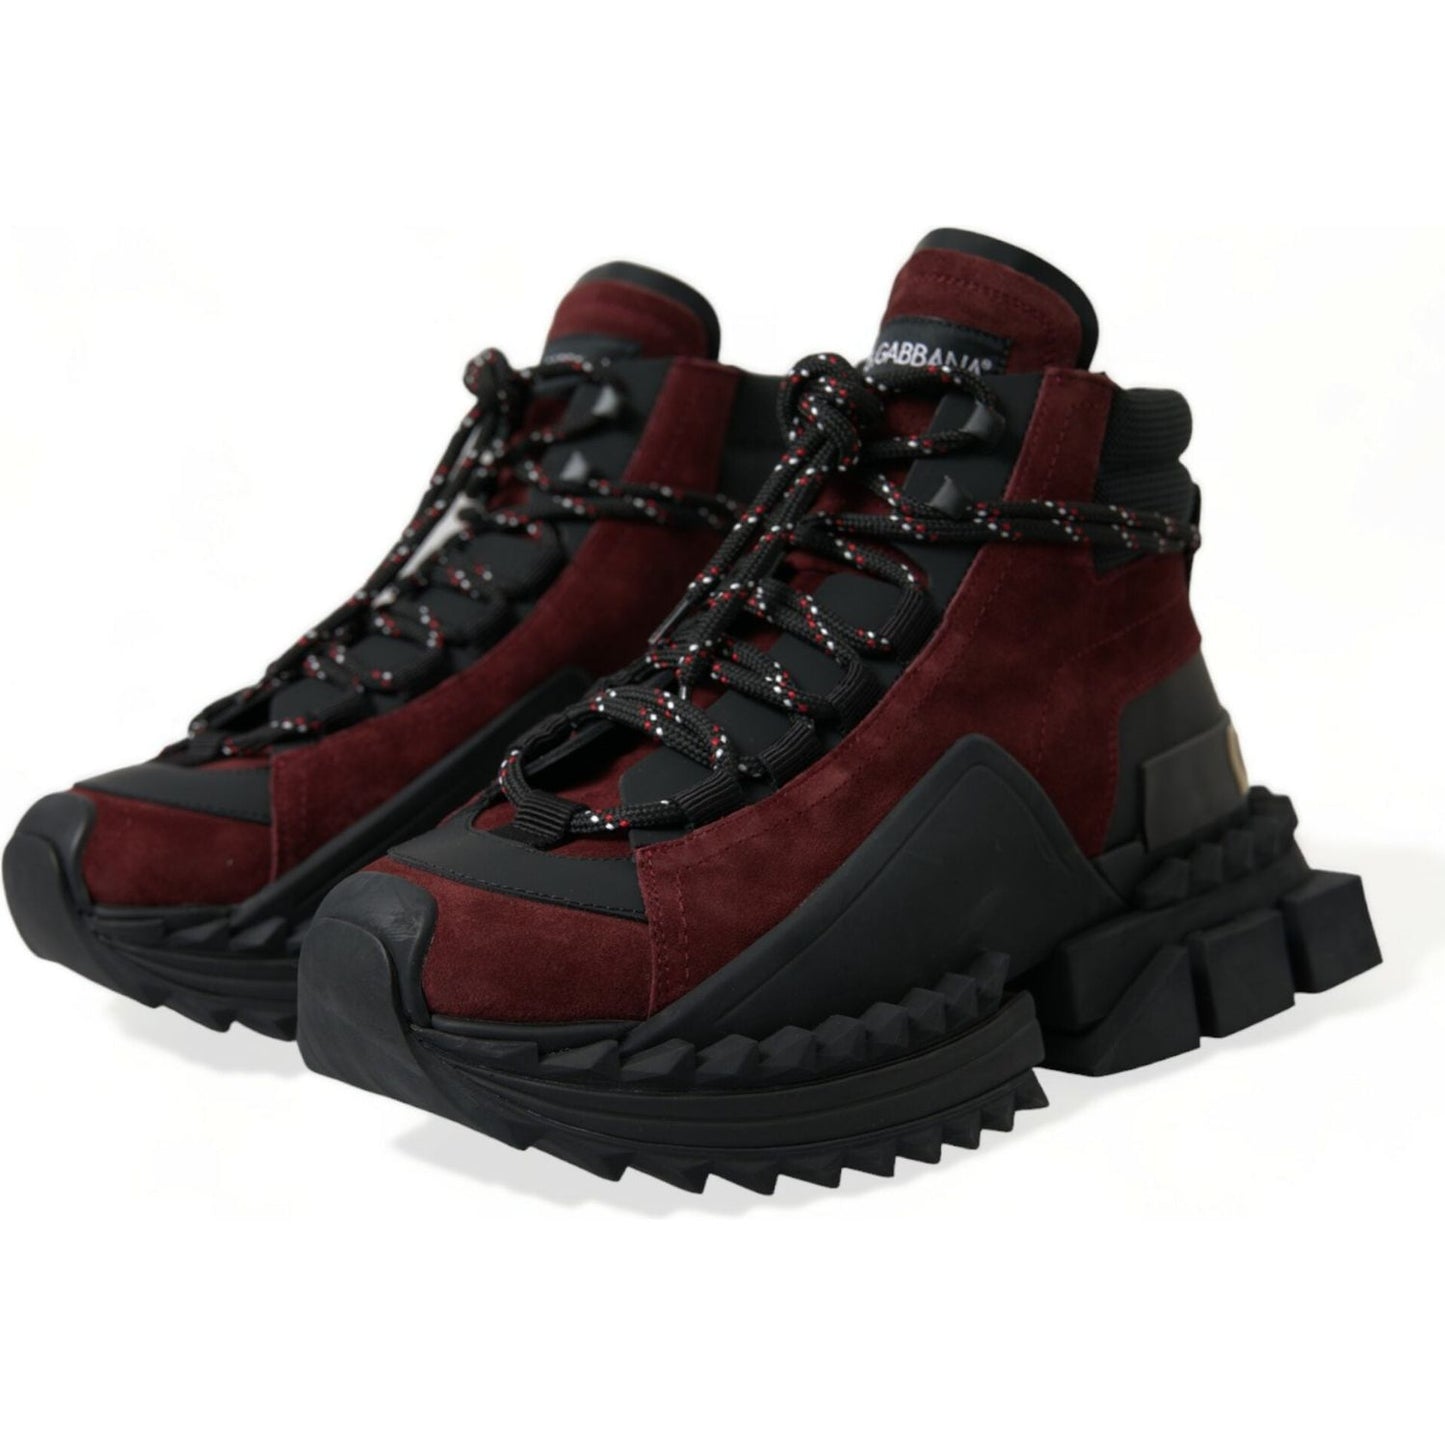 Dolce & Gabbana Burgundy Leather High Top Sneakers burgundy-super-king-high-top-men-sneakers-shoes